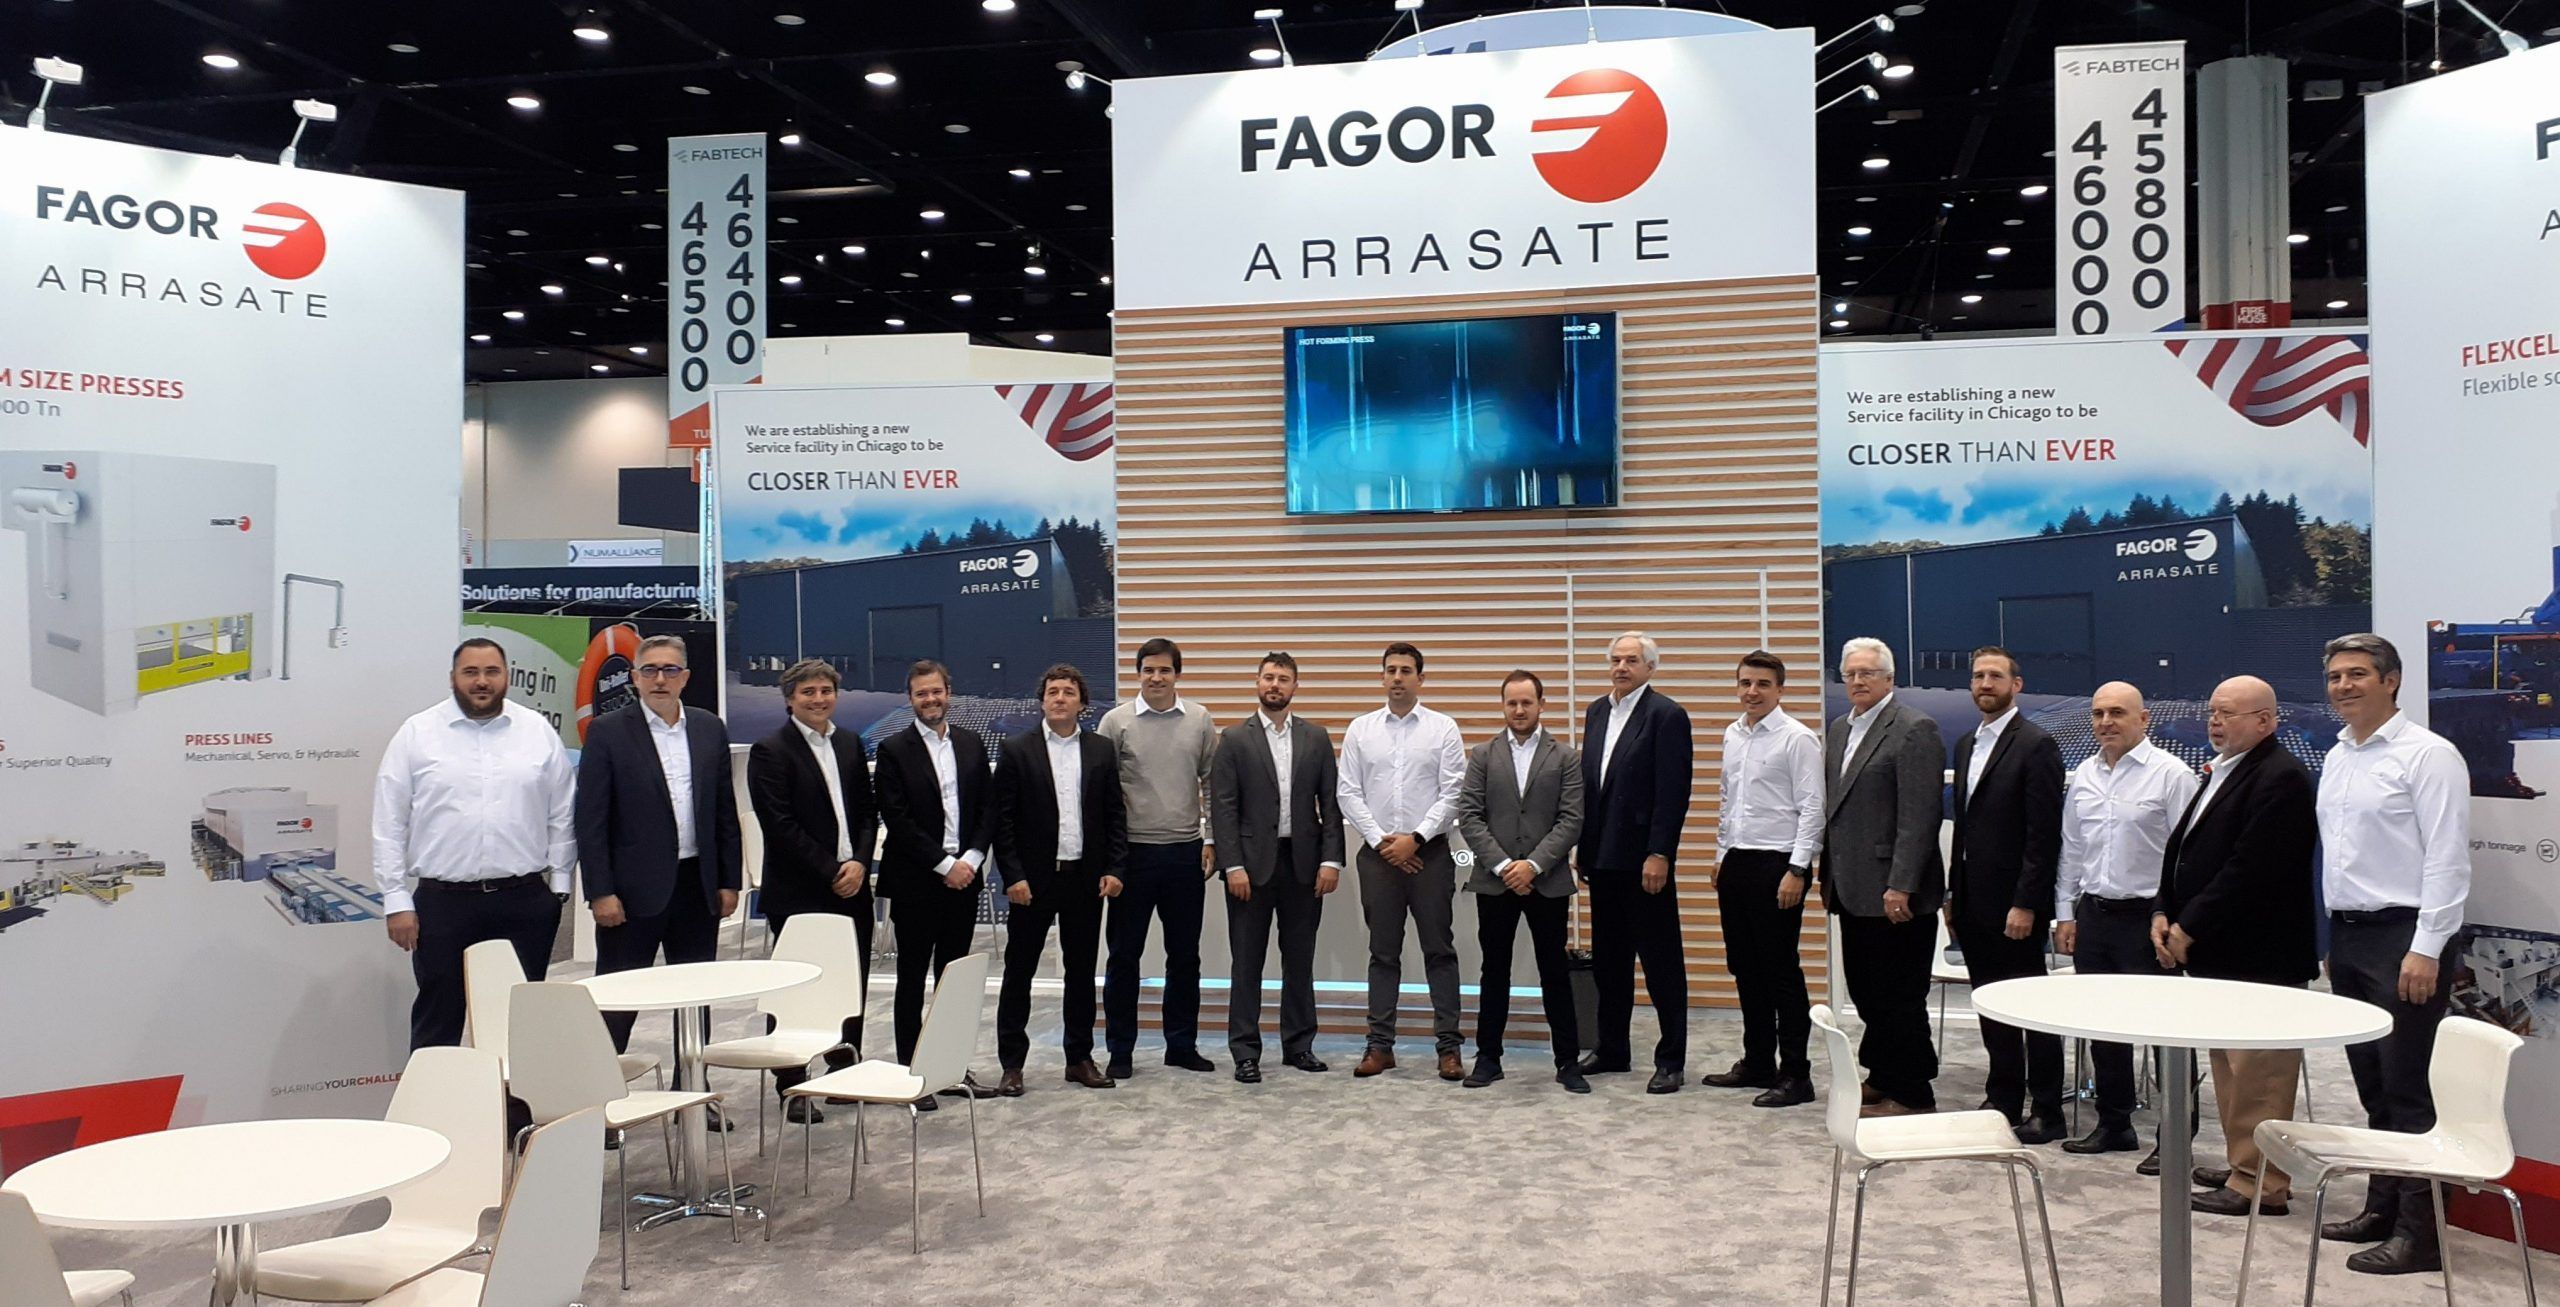 Fagor Arrasate event: Fagor Arrasate kündigt die Eröffnung eines neuen Servicewerkes in der Umgebung von Chicago an